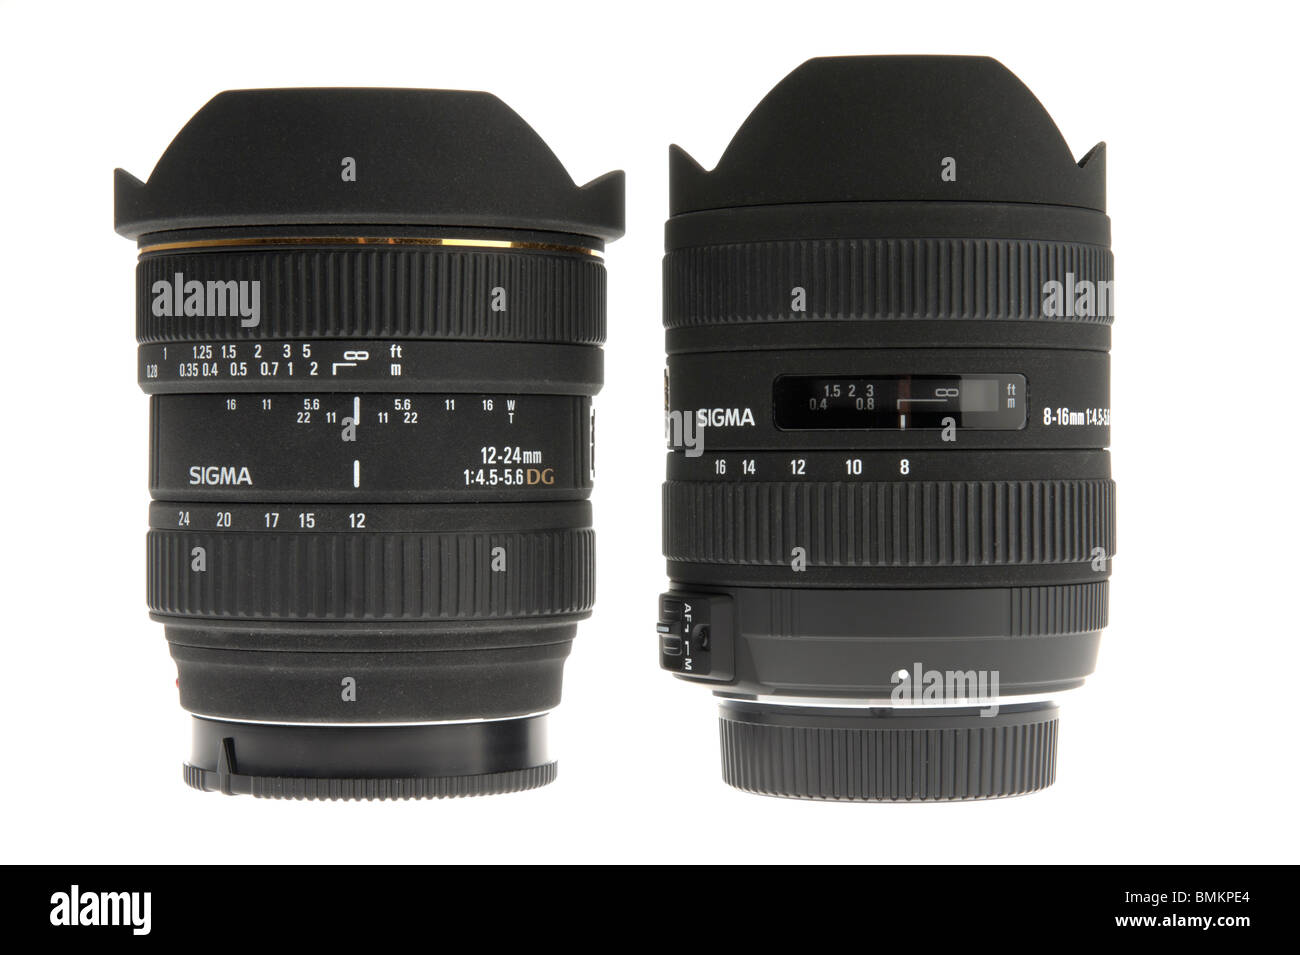 Comparación entre las lentes de zoom para full frame de 35mm y APS-C Foto de stock